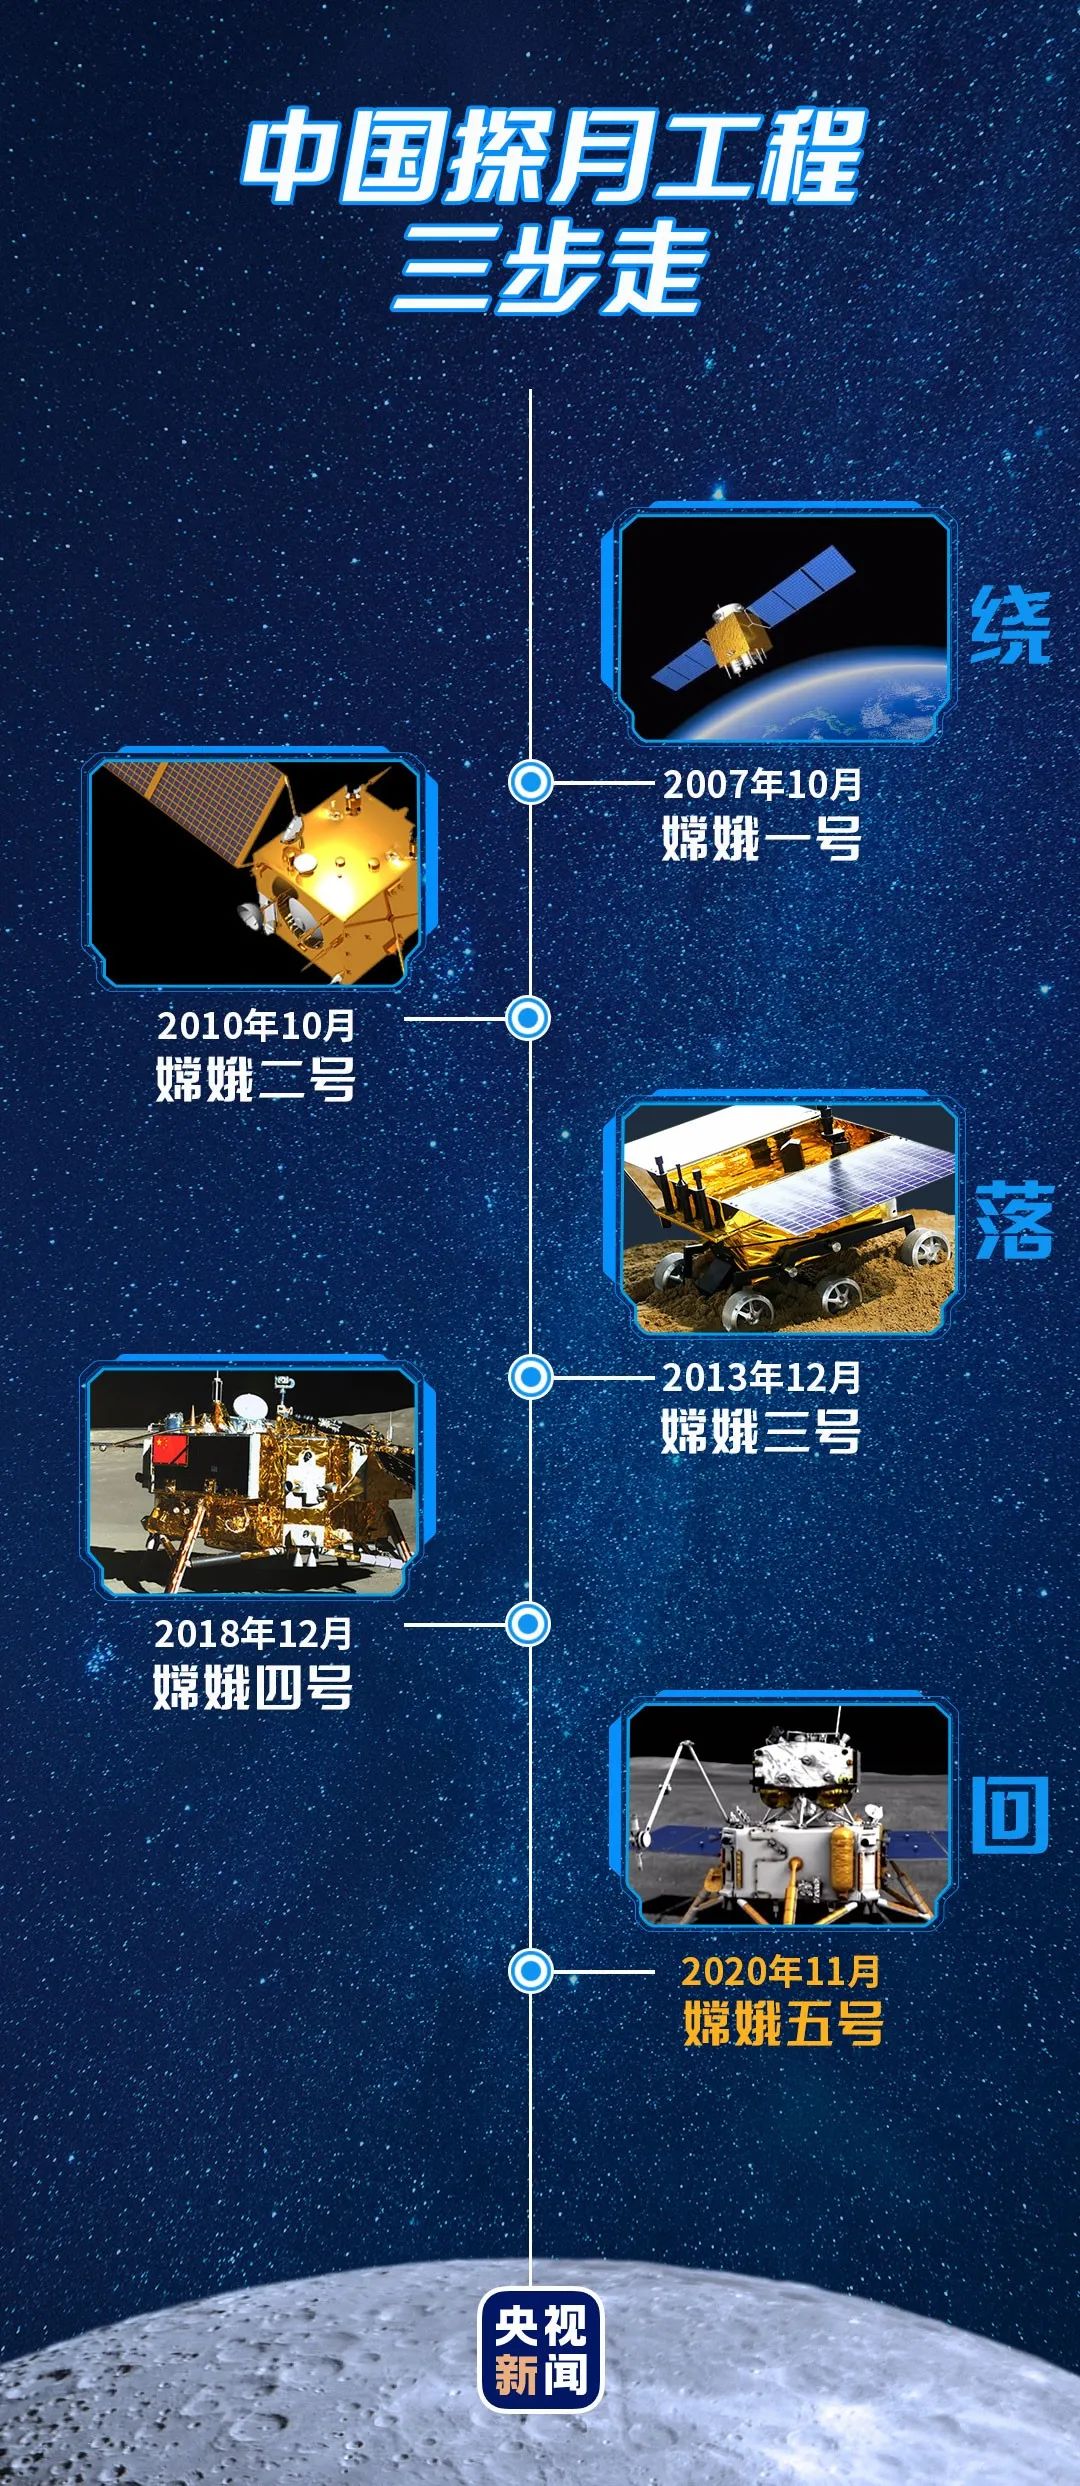 嫦娥号系列飞船的简介图片